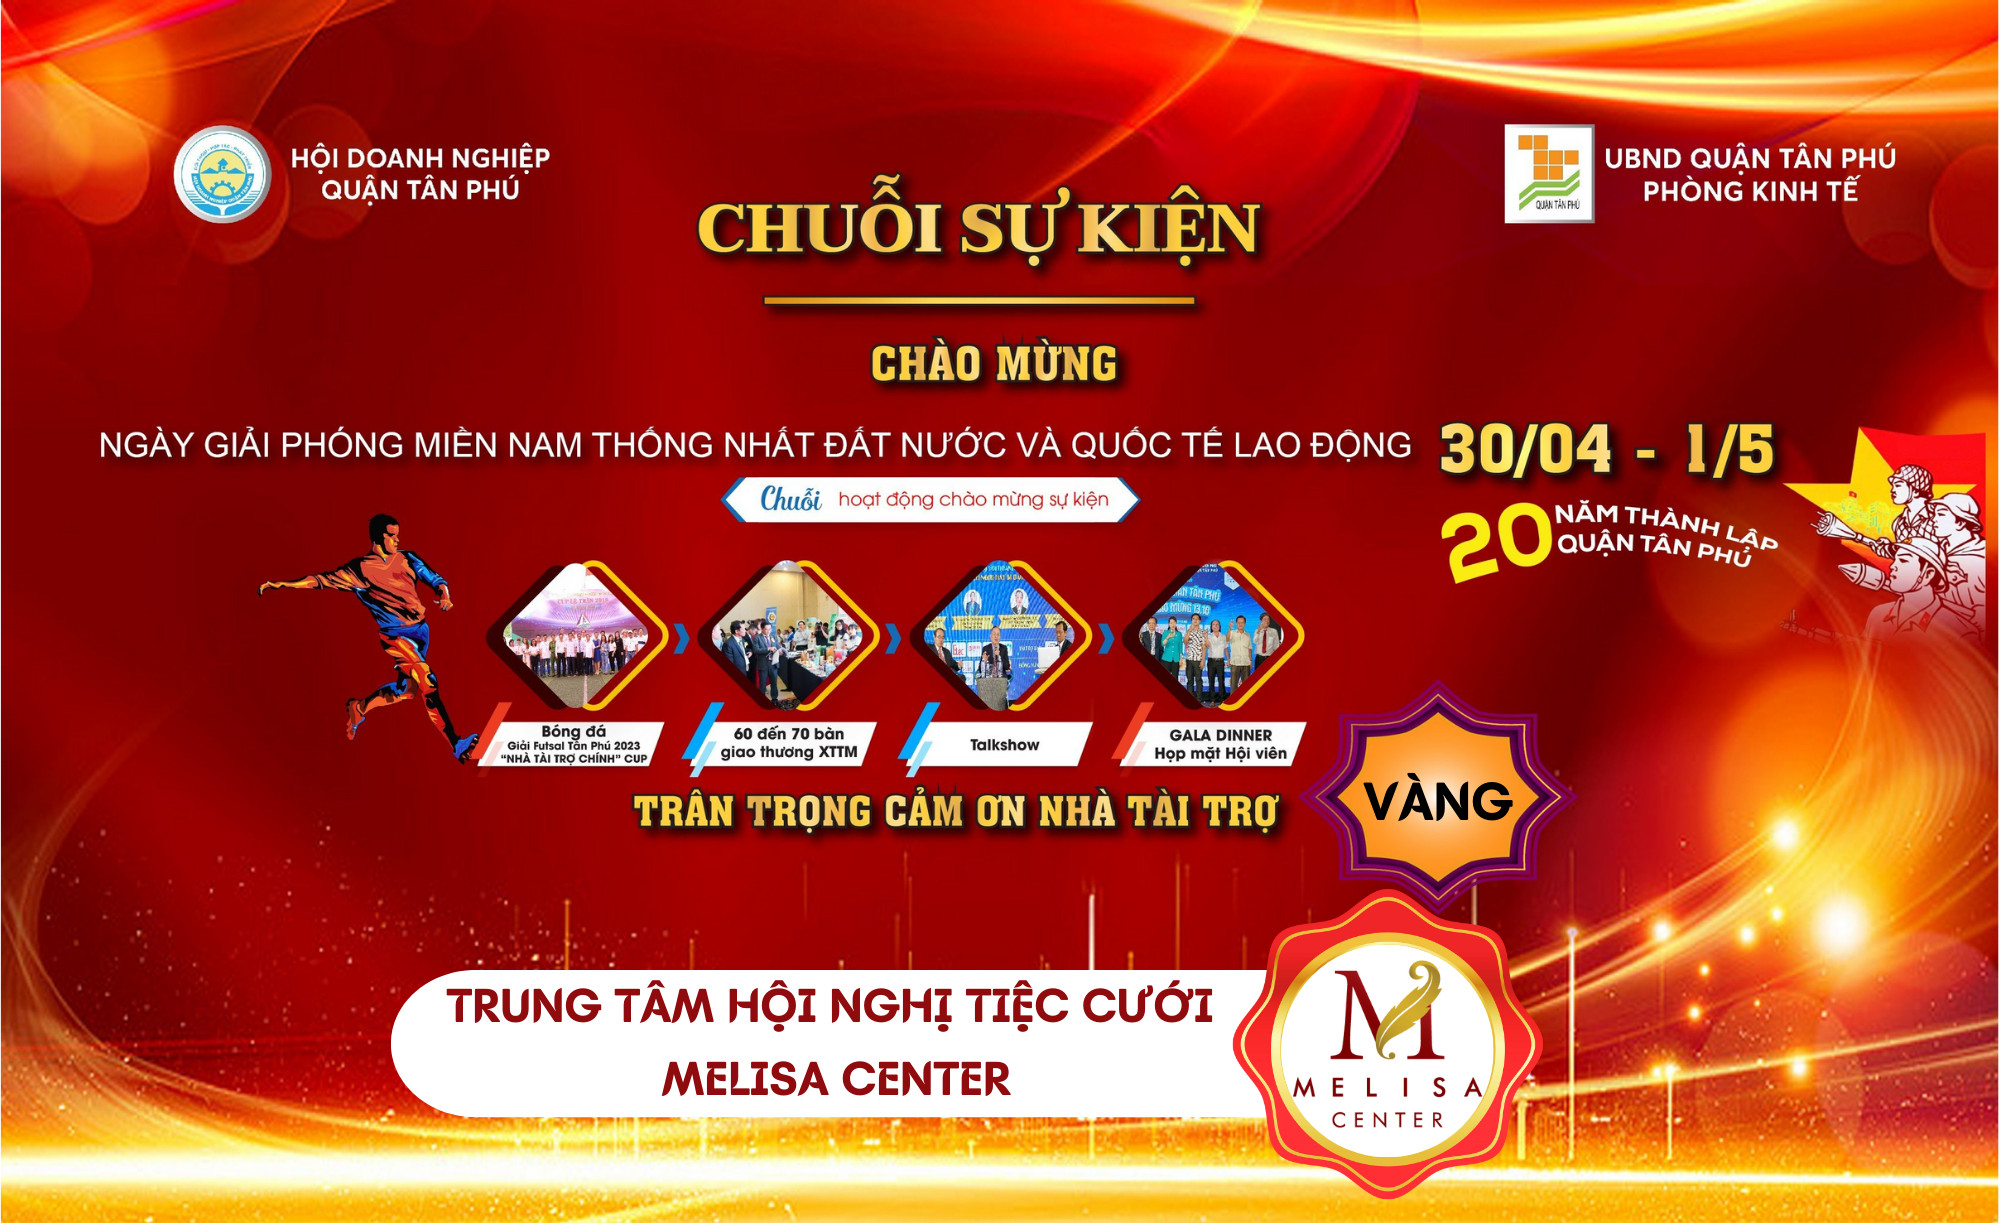 Tín Việt đồng hành cùng sự kiện Hội DN Quận Tân Phú